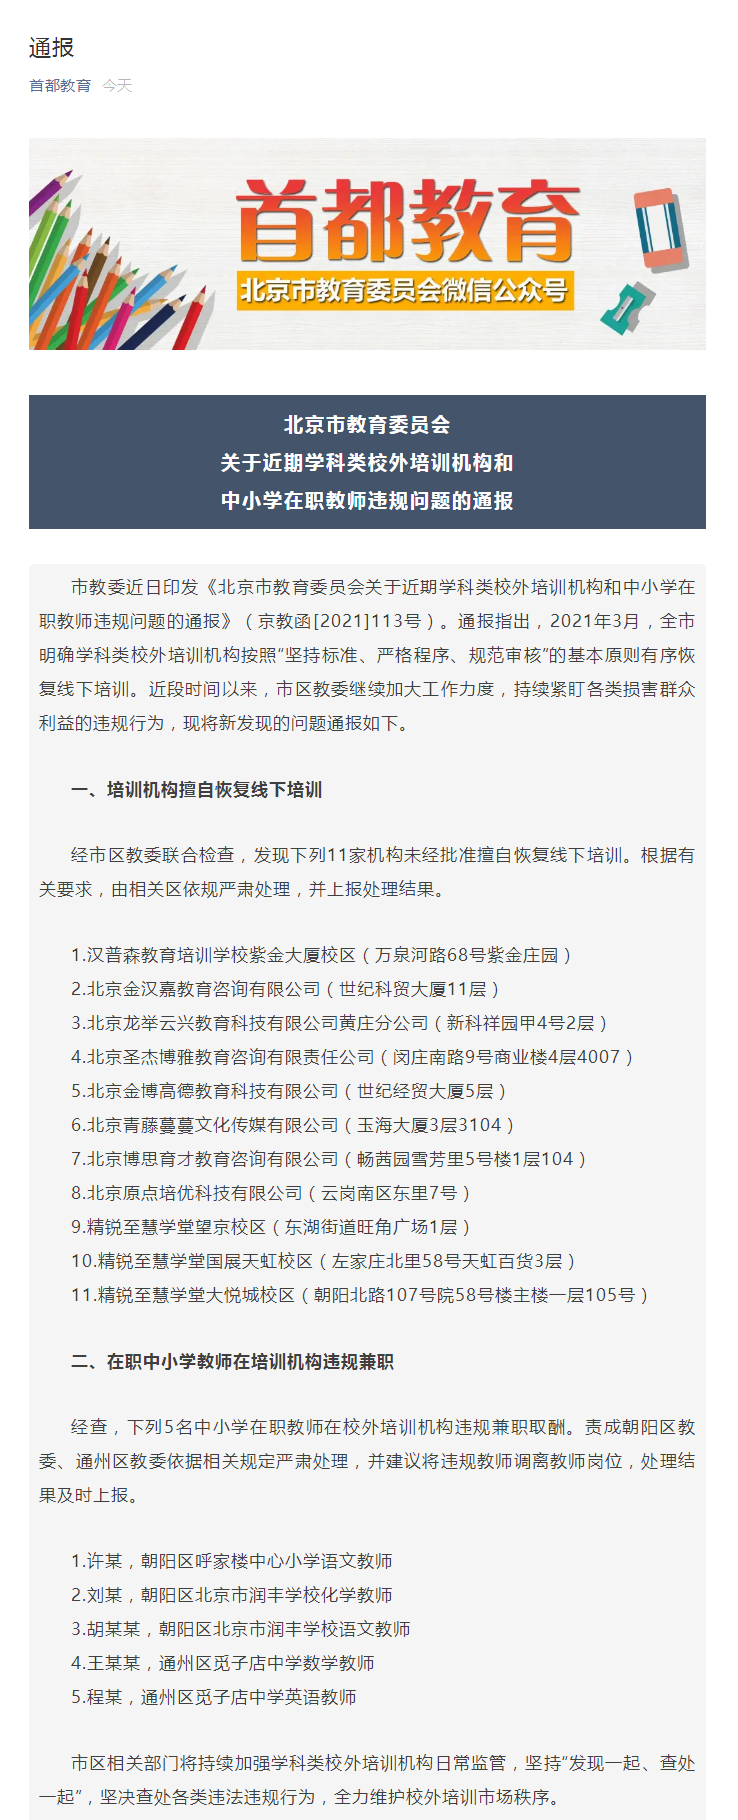 北京市教委通报近期学科类校外培训机构和中小学在职教师违规问题